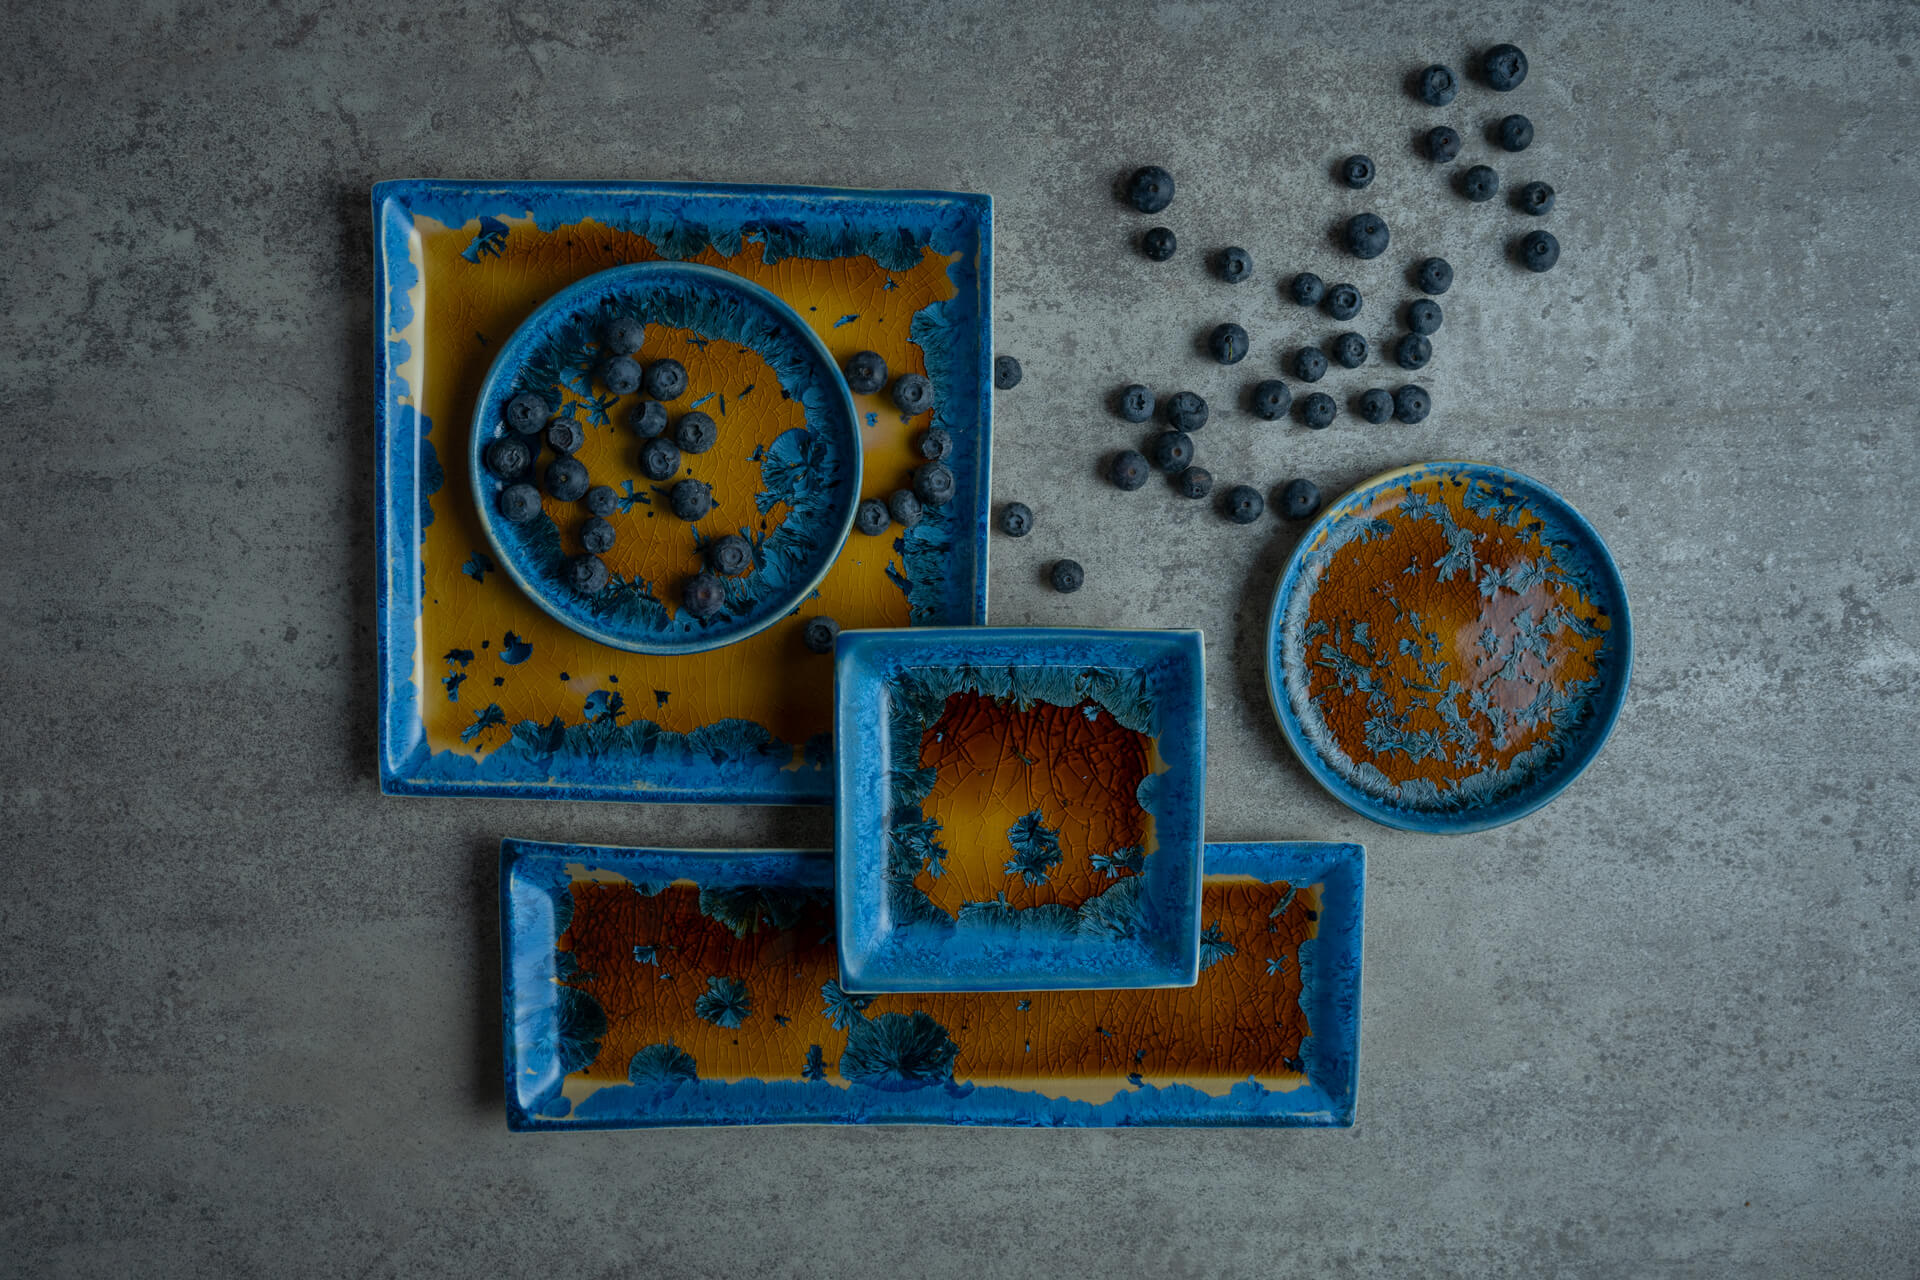 ジャンピエールコヒュートの淵をターコイズブルーで彩った陶器